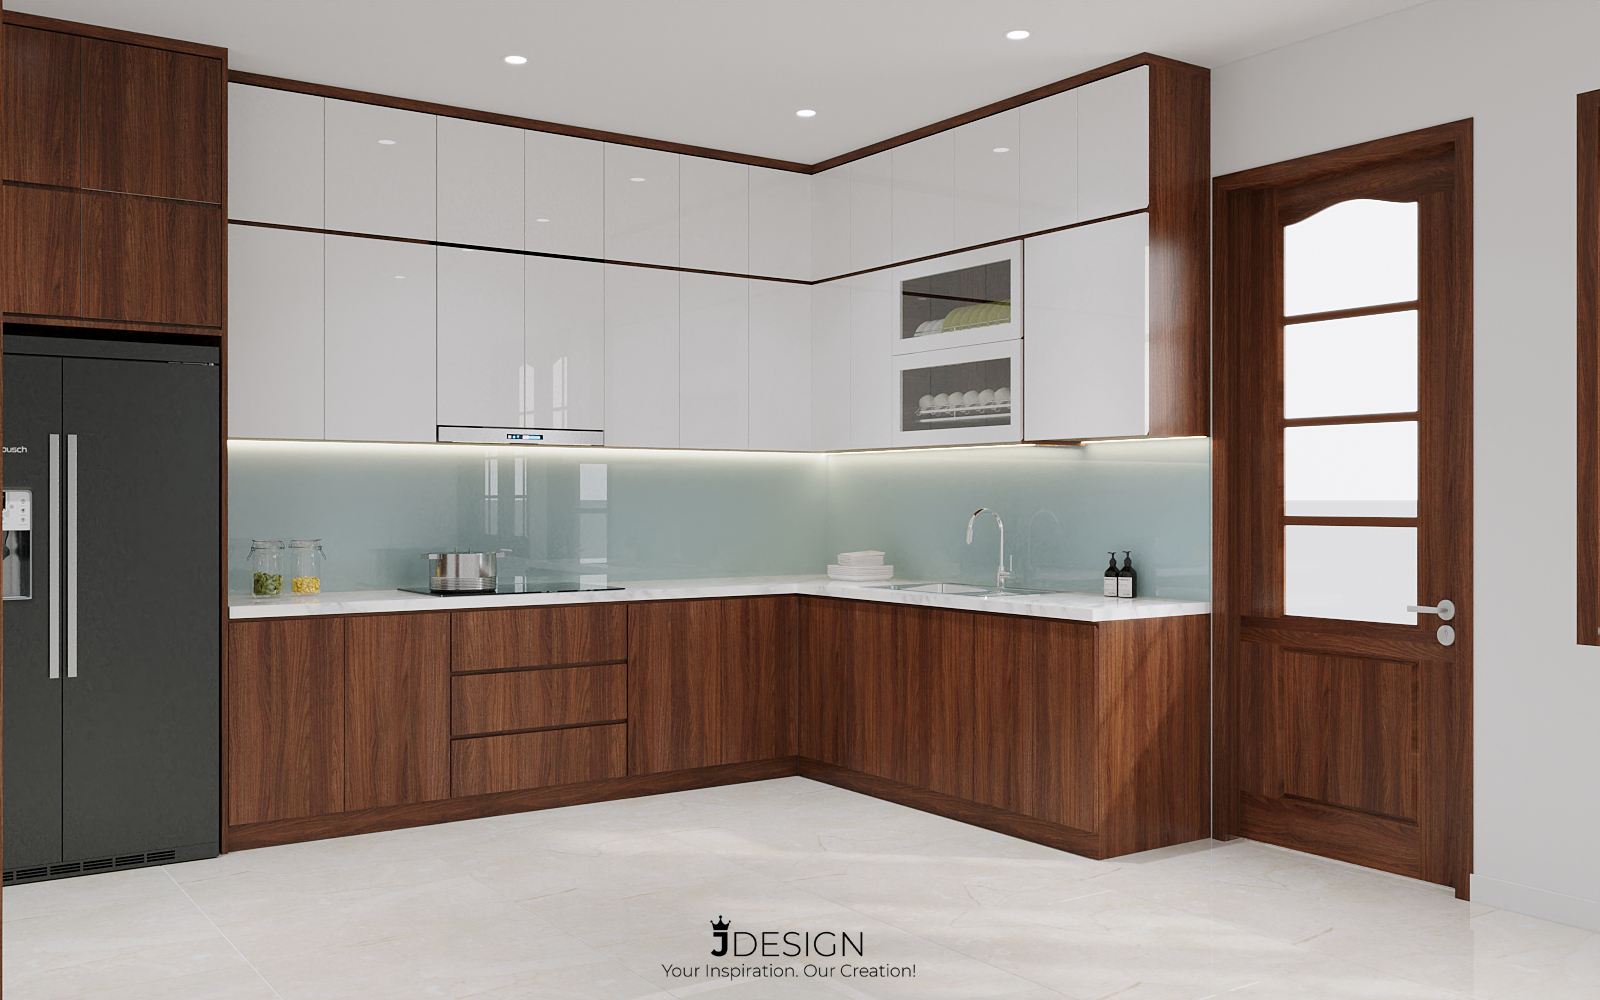 Khu vực phòng bếp hiện đại, sử dụng MFC/Laminate đồng màu với gỗ tự nhiên hiện trạng